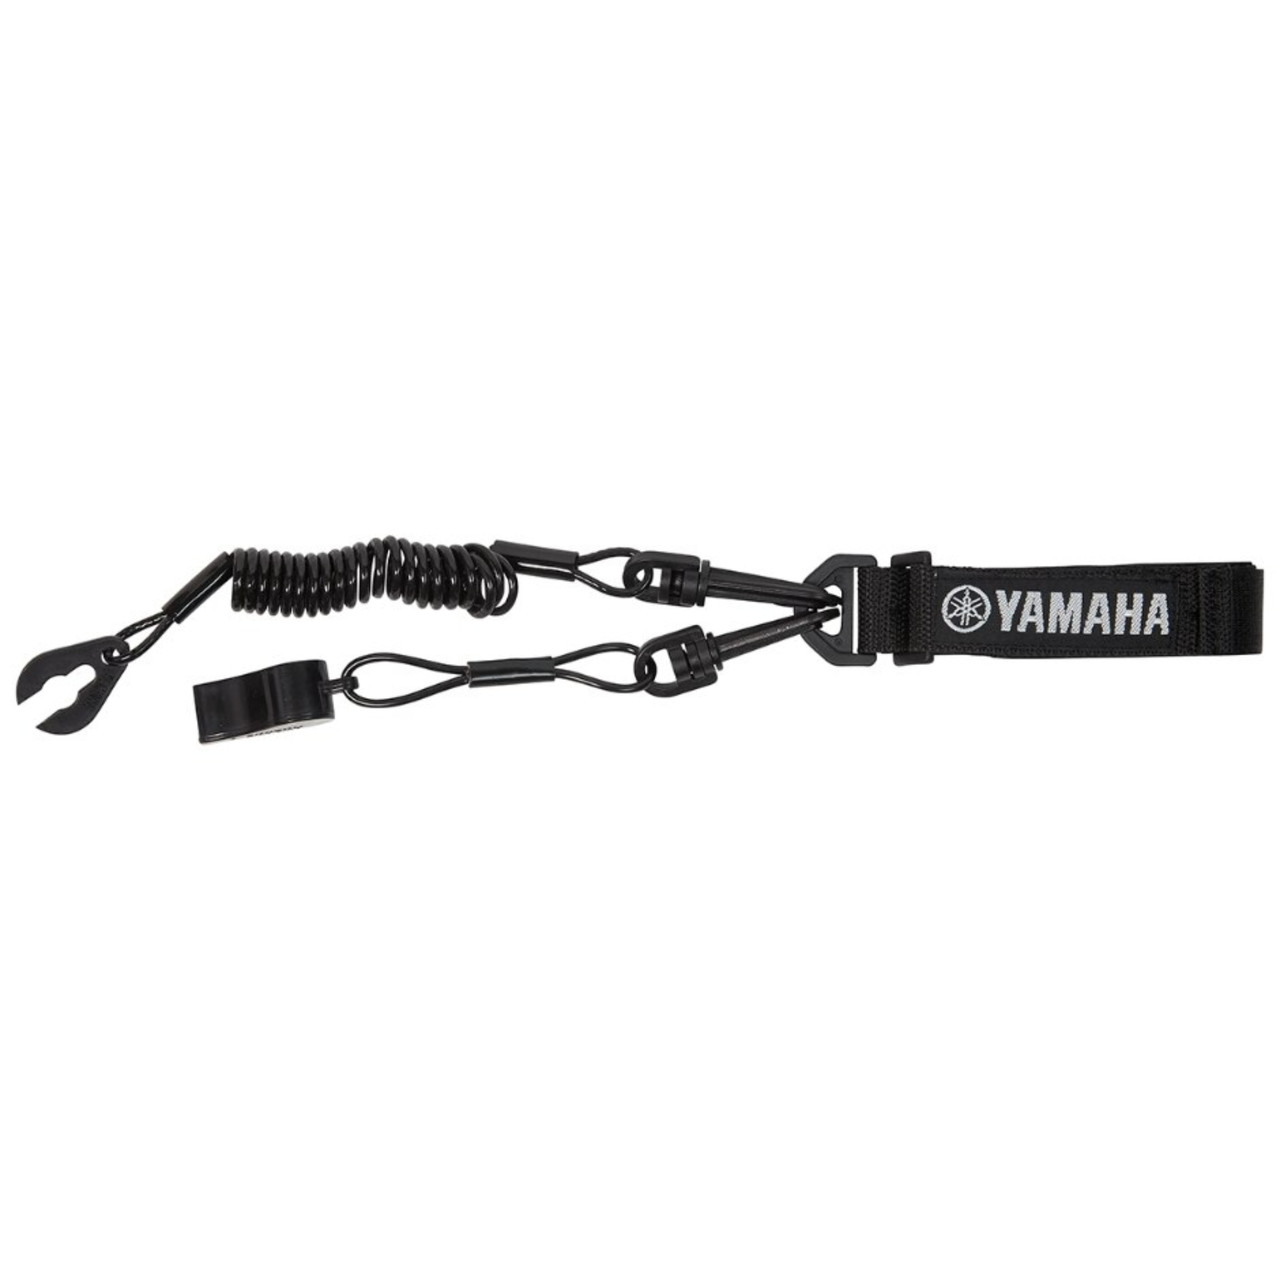 Yamaha New OEM Black WaveRunner Pro Lanyard with Whistle, MWV-PROLN-YD-BK